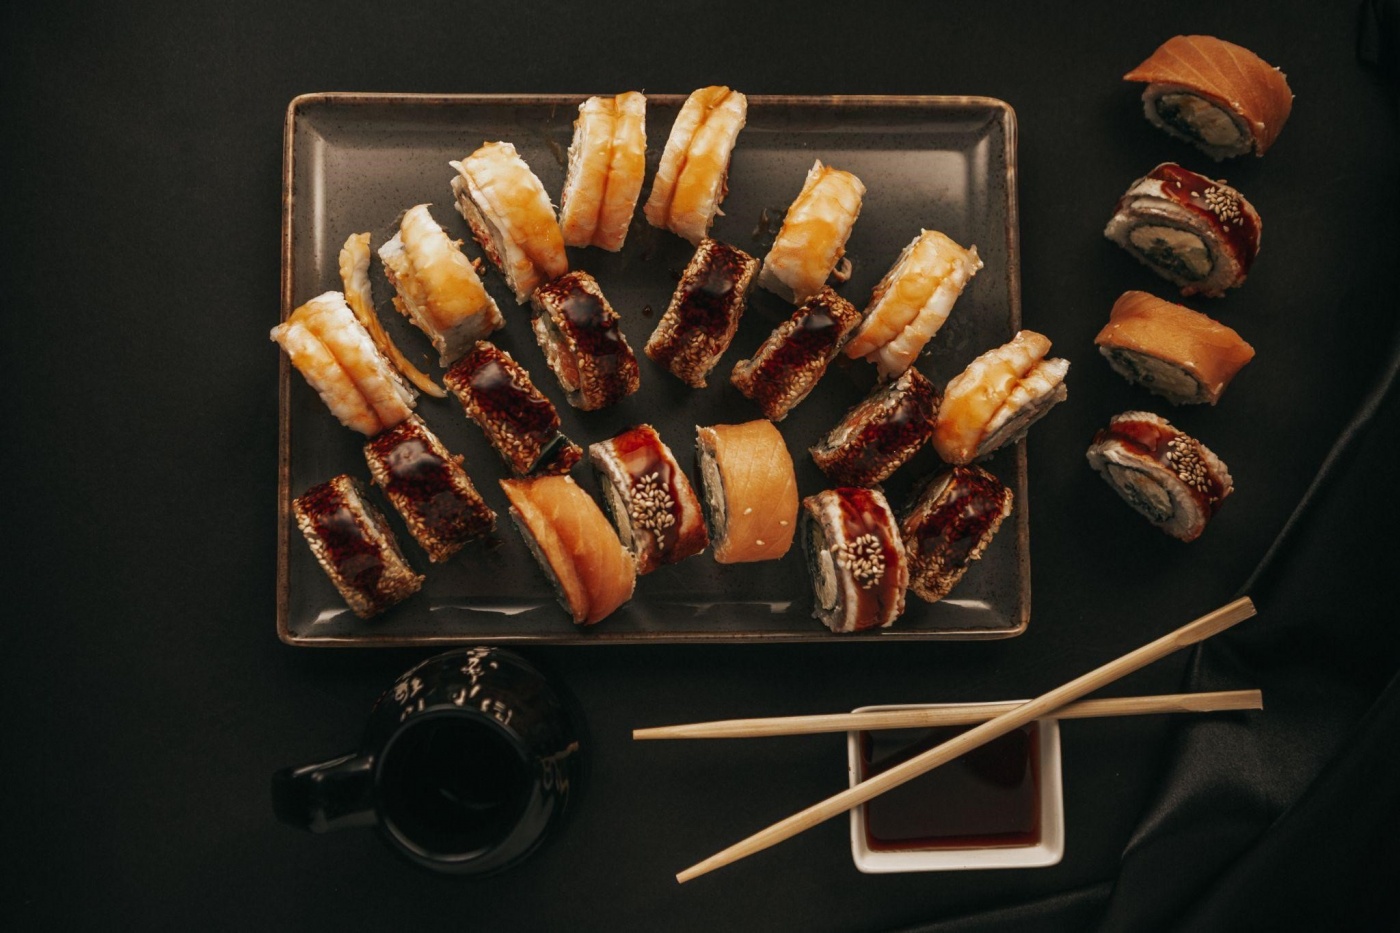 Приготовить суши дома или заказать доставку — что экономнее и вкуснее?